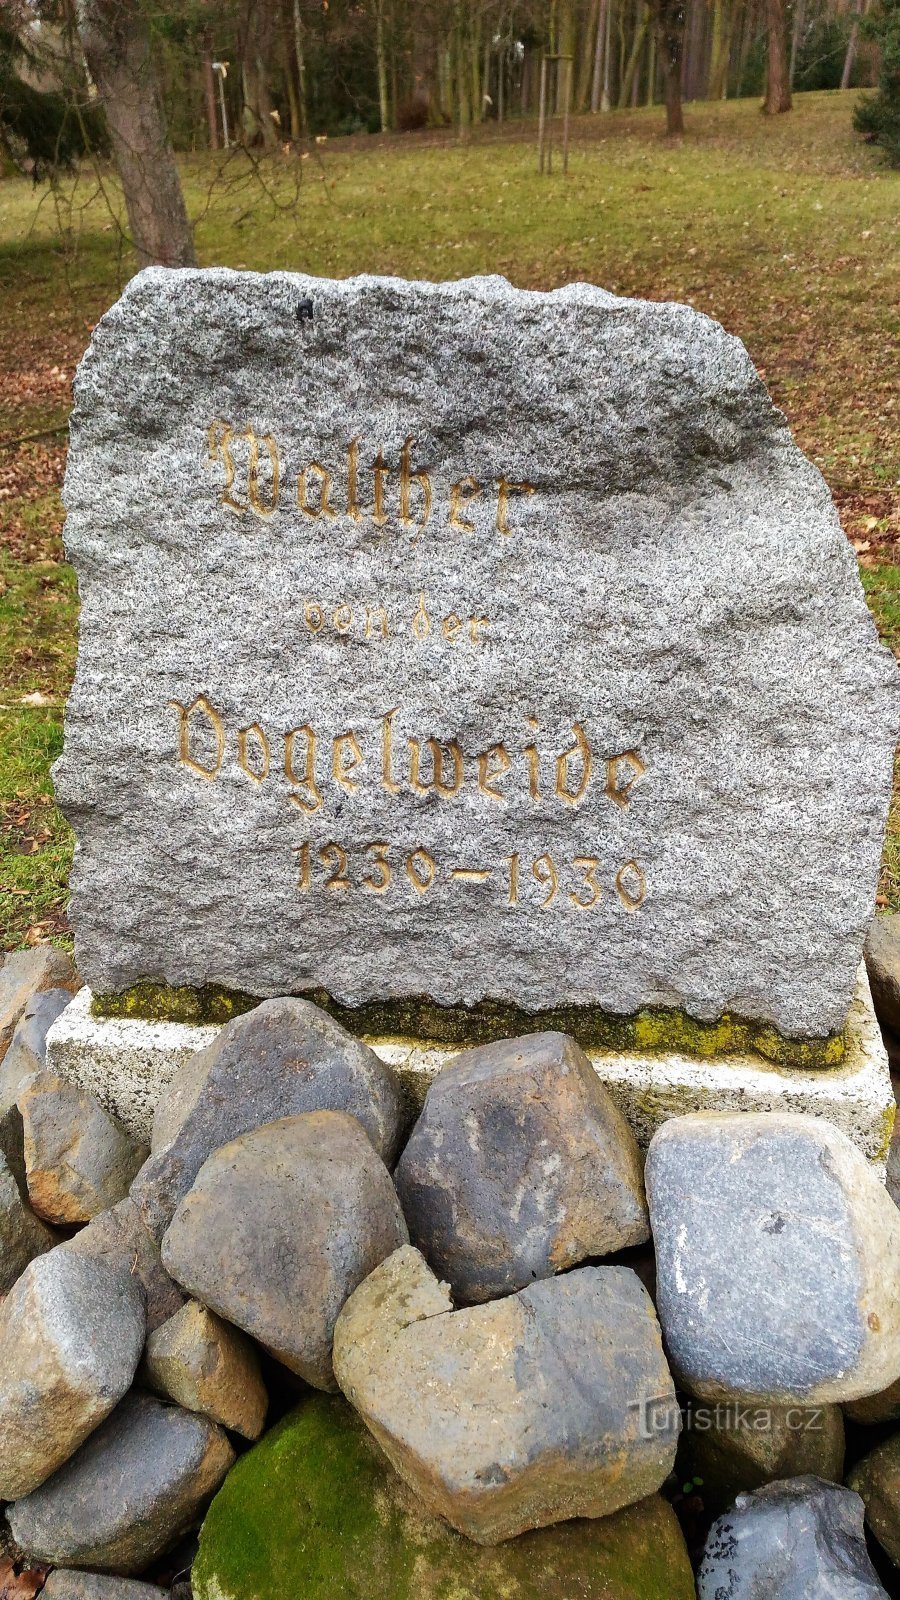 Spomenik Waltheru von der Vogelweideu u Gradskom parku u Česká Lipi